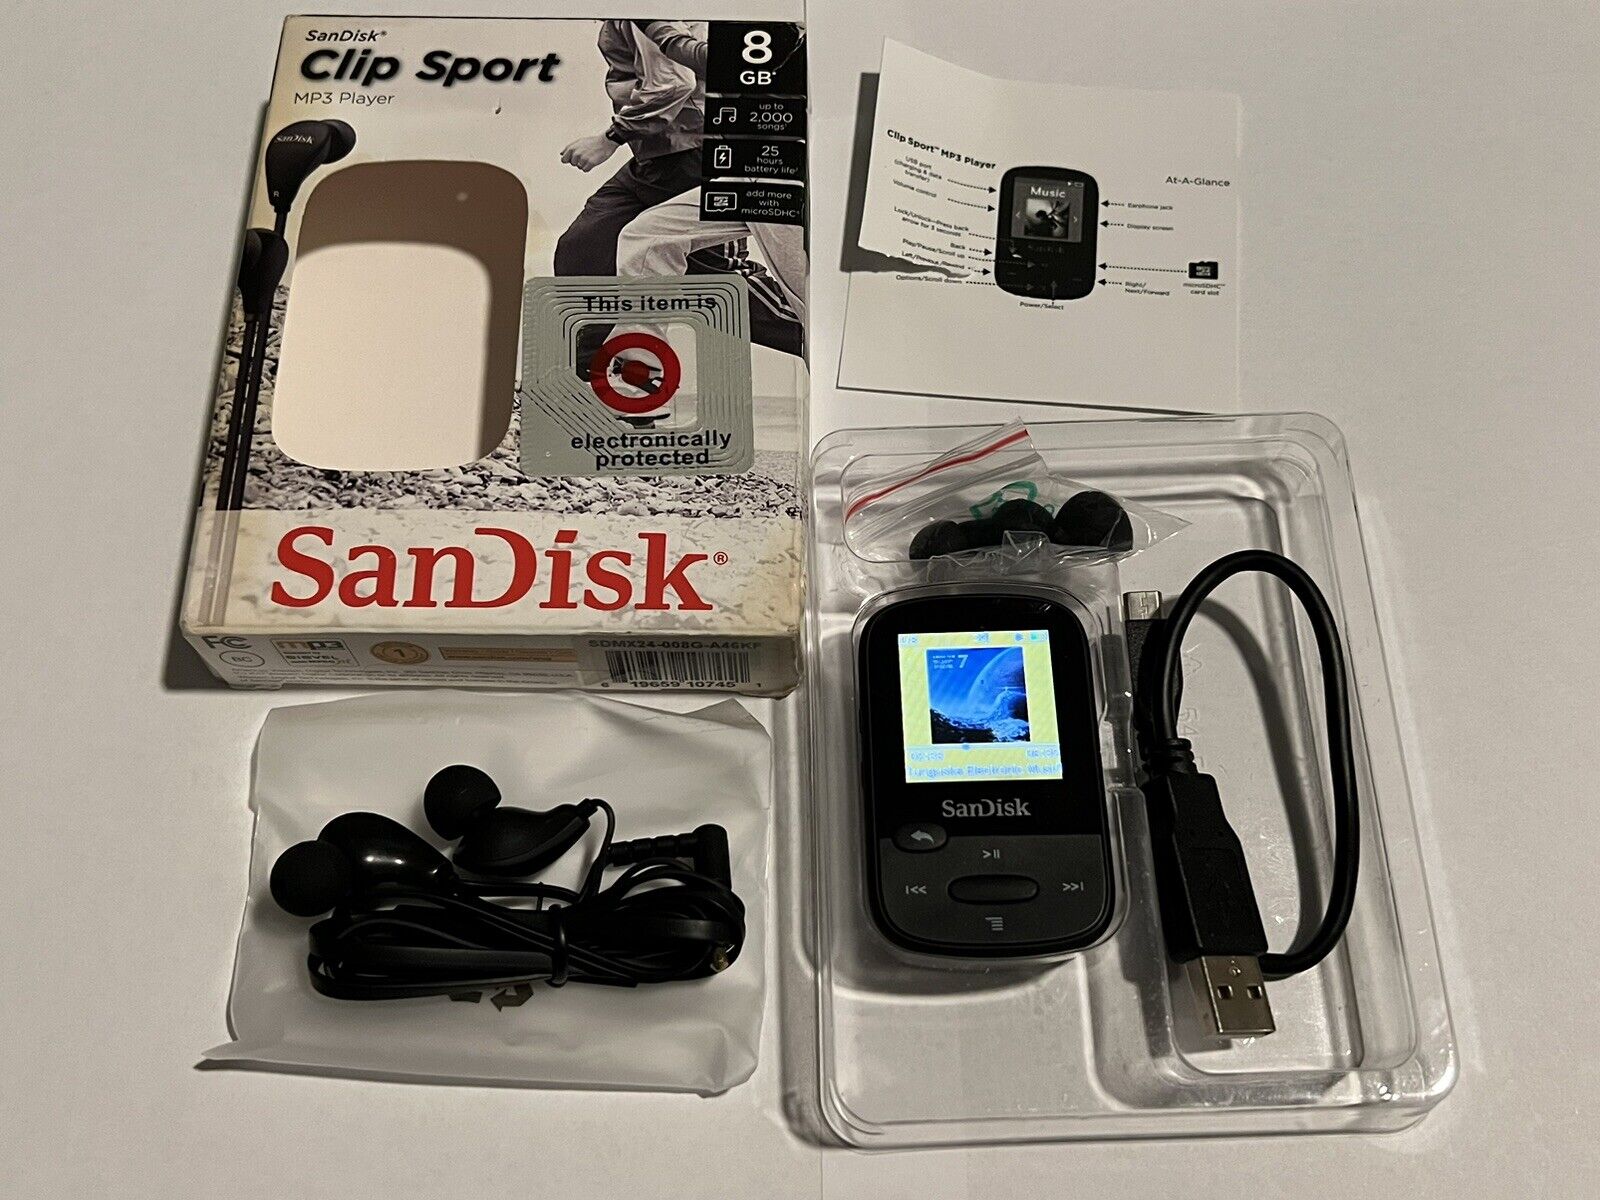 📀 SanDisk Clip Sport Mp3 Player, 8GB (SDMX24-008G-A46KF) (BLACK) AS SHOWN